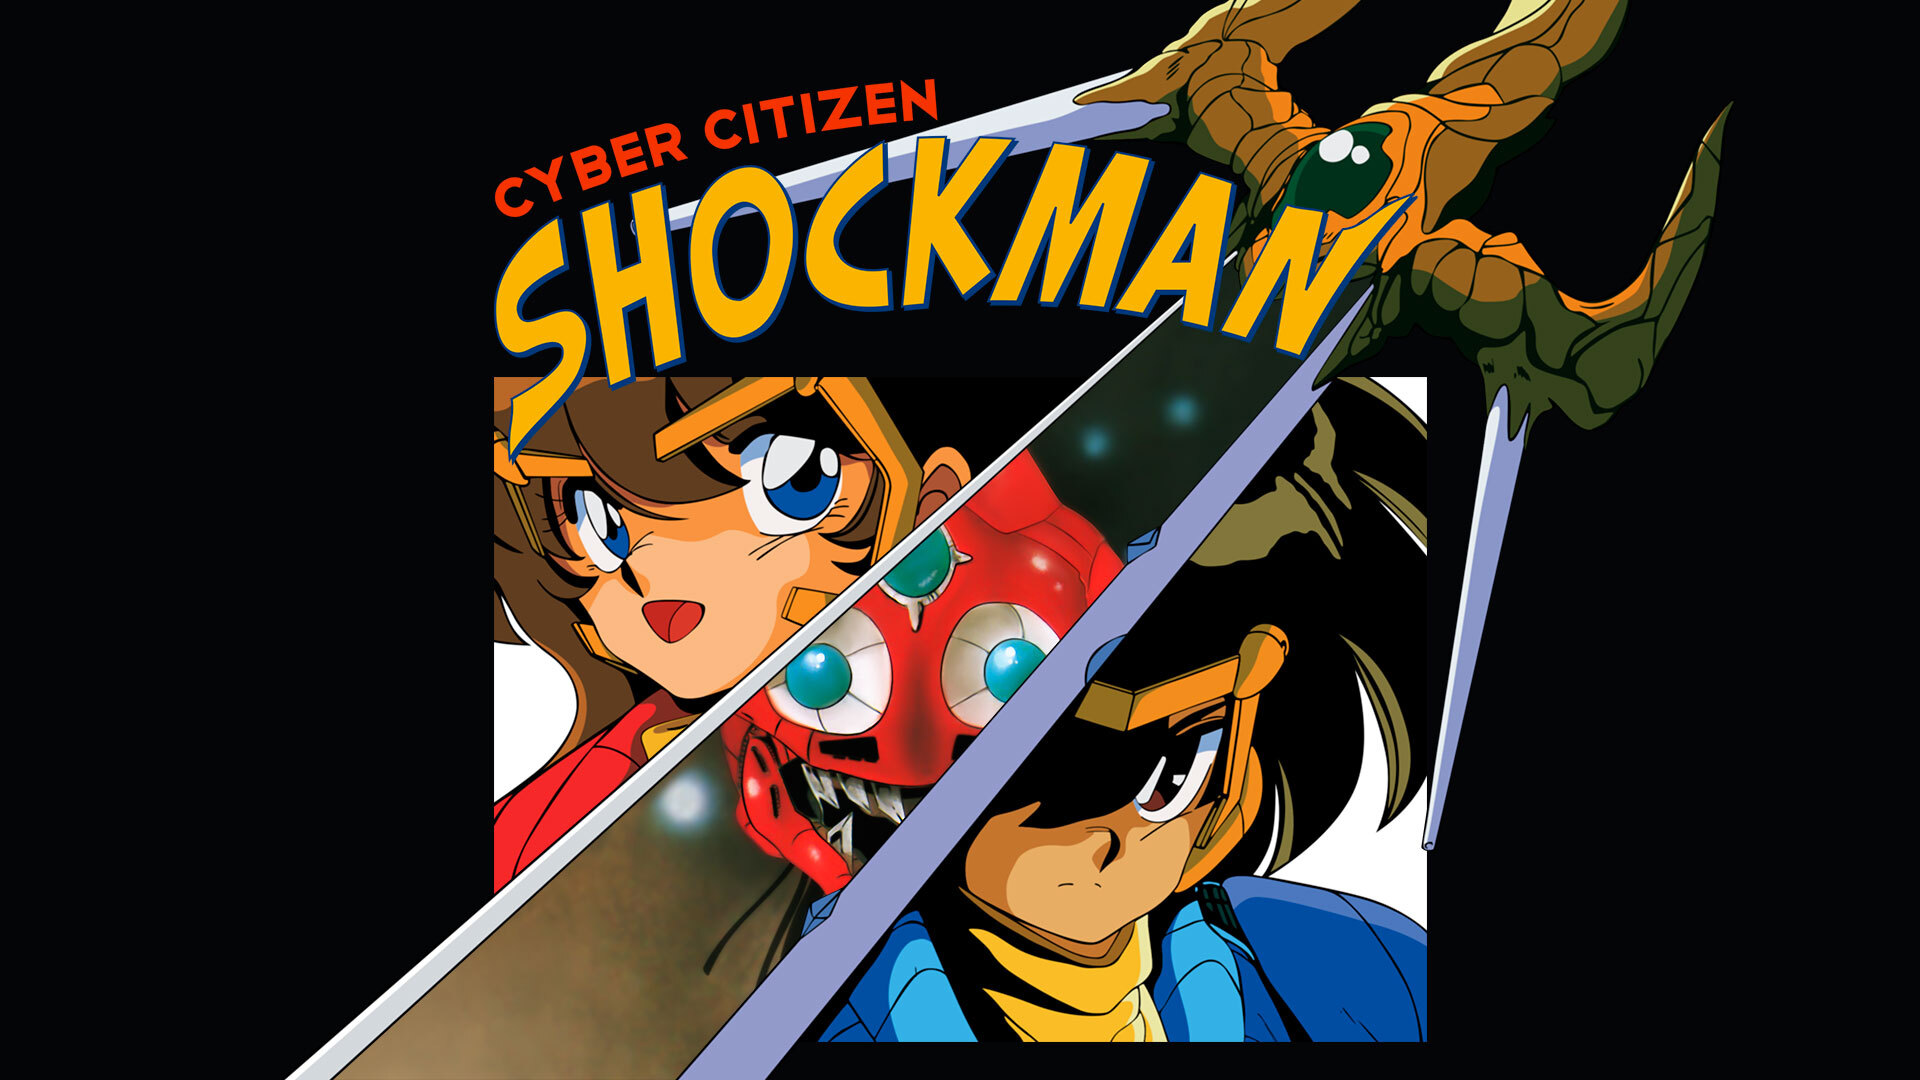 Cyber Citizen Shockman - Metacritic